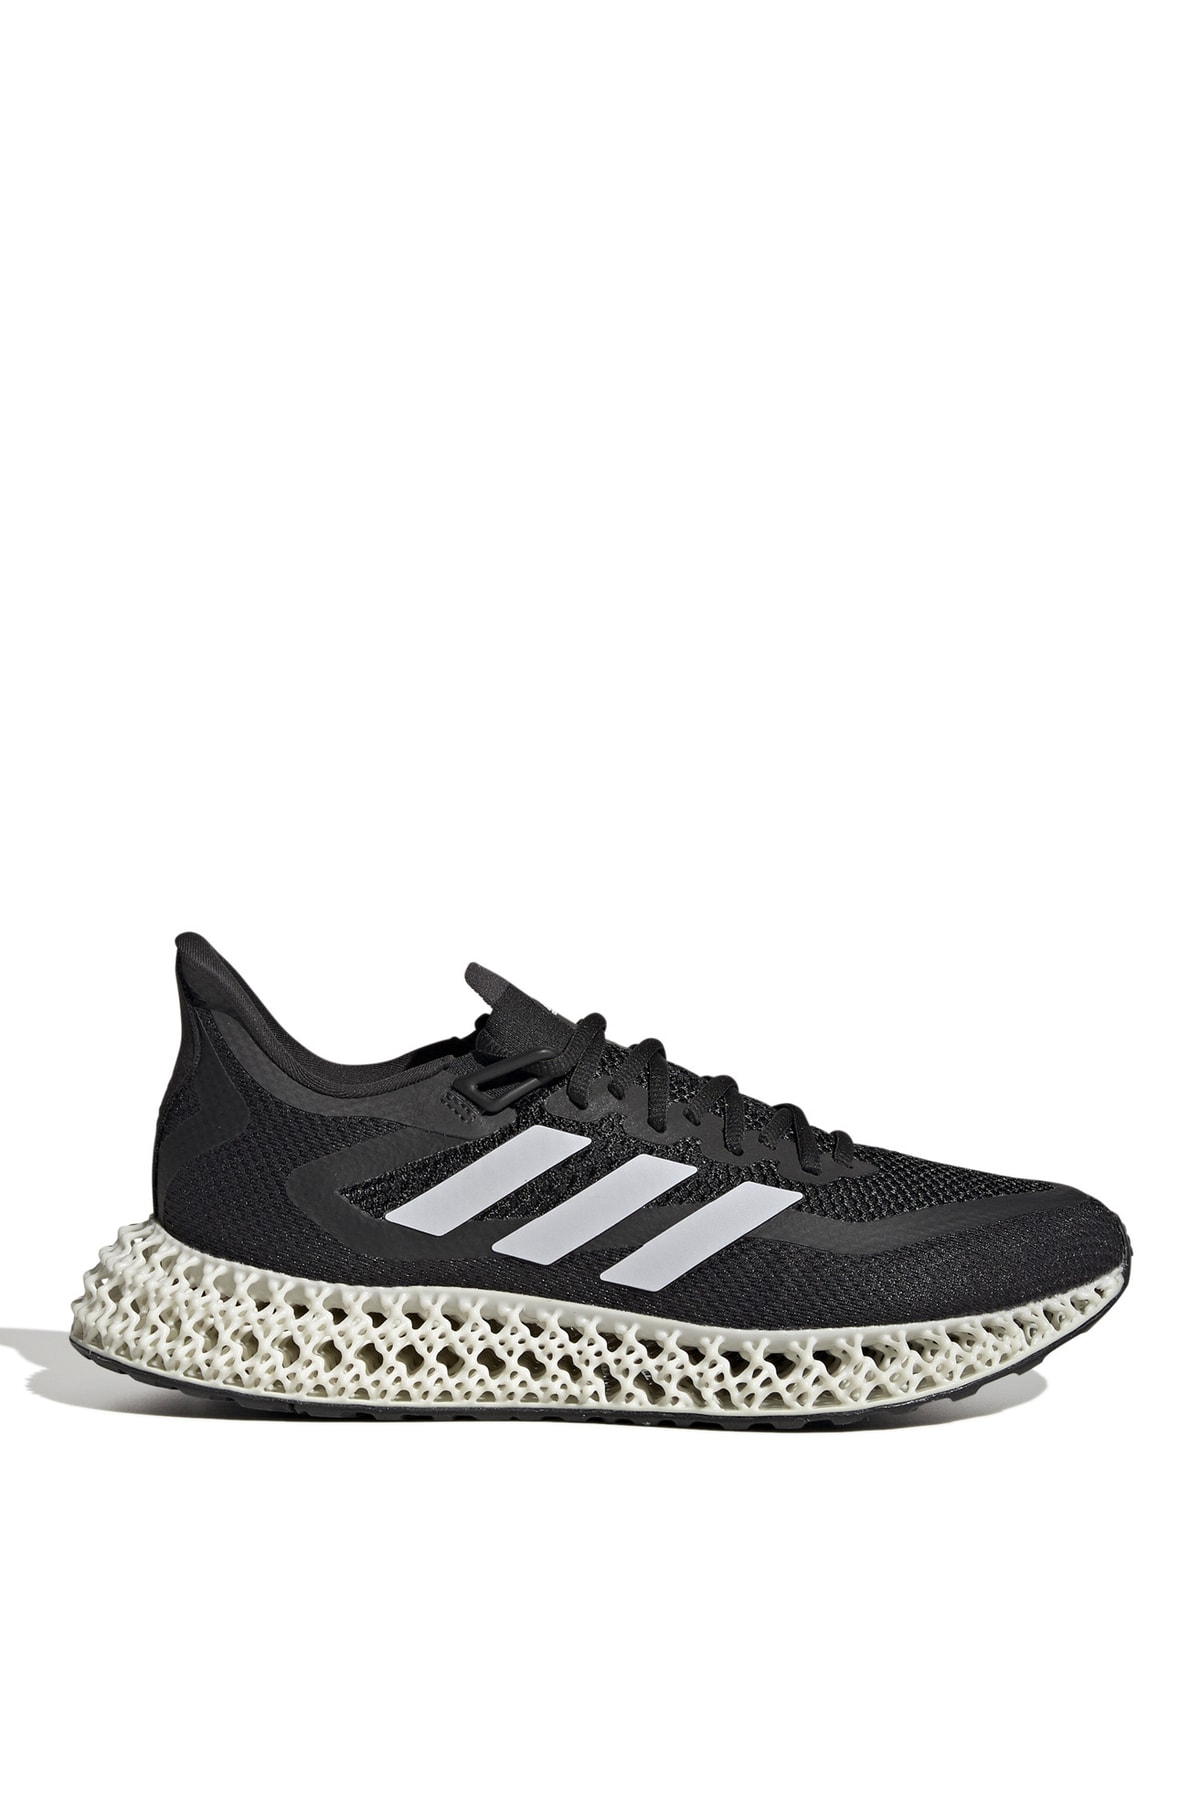 adidas Siyah - Beyaz Erkek Koşu Ayakkabısı Gx9249 4dfwd 2 M